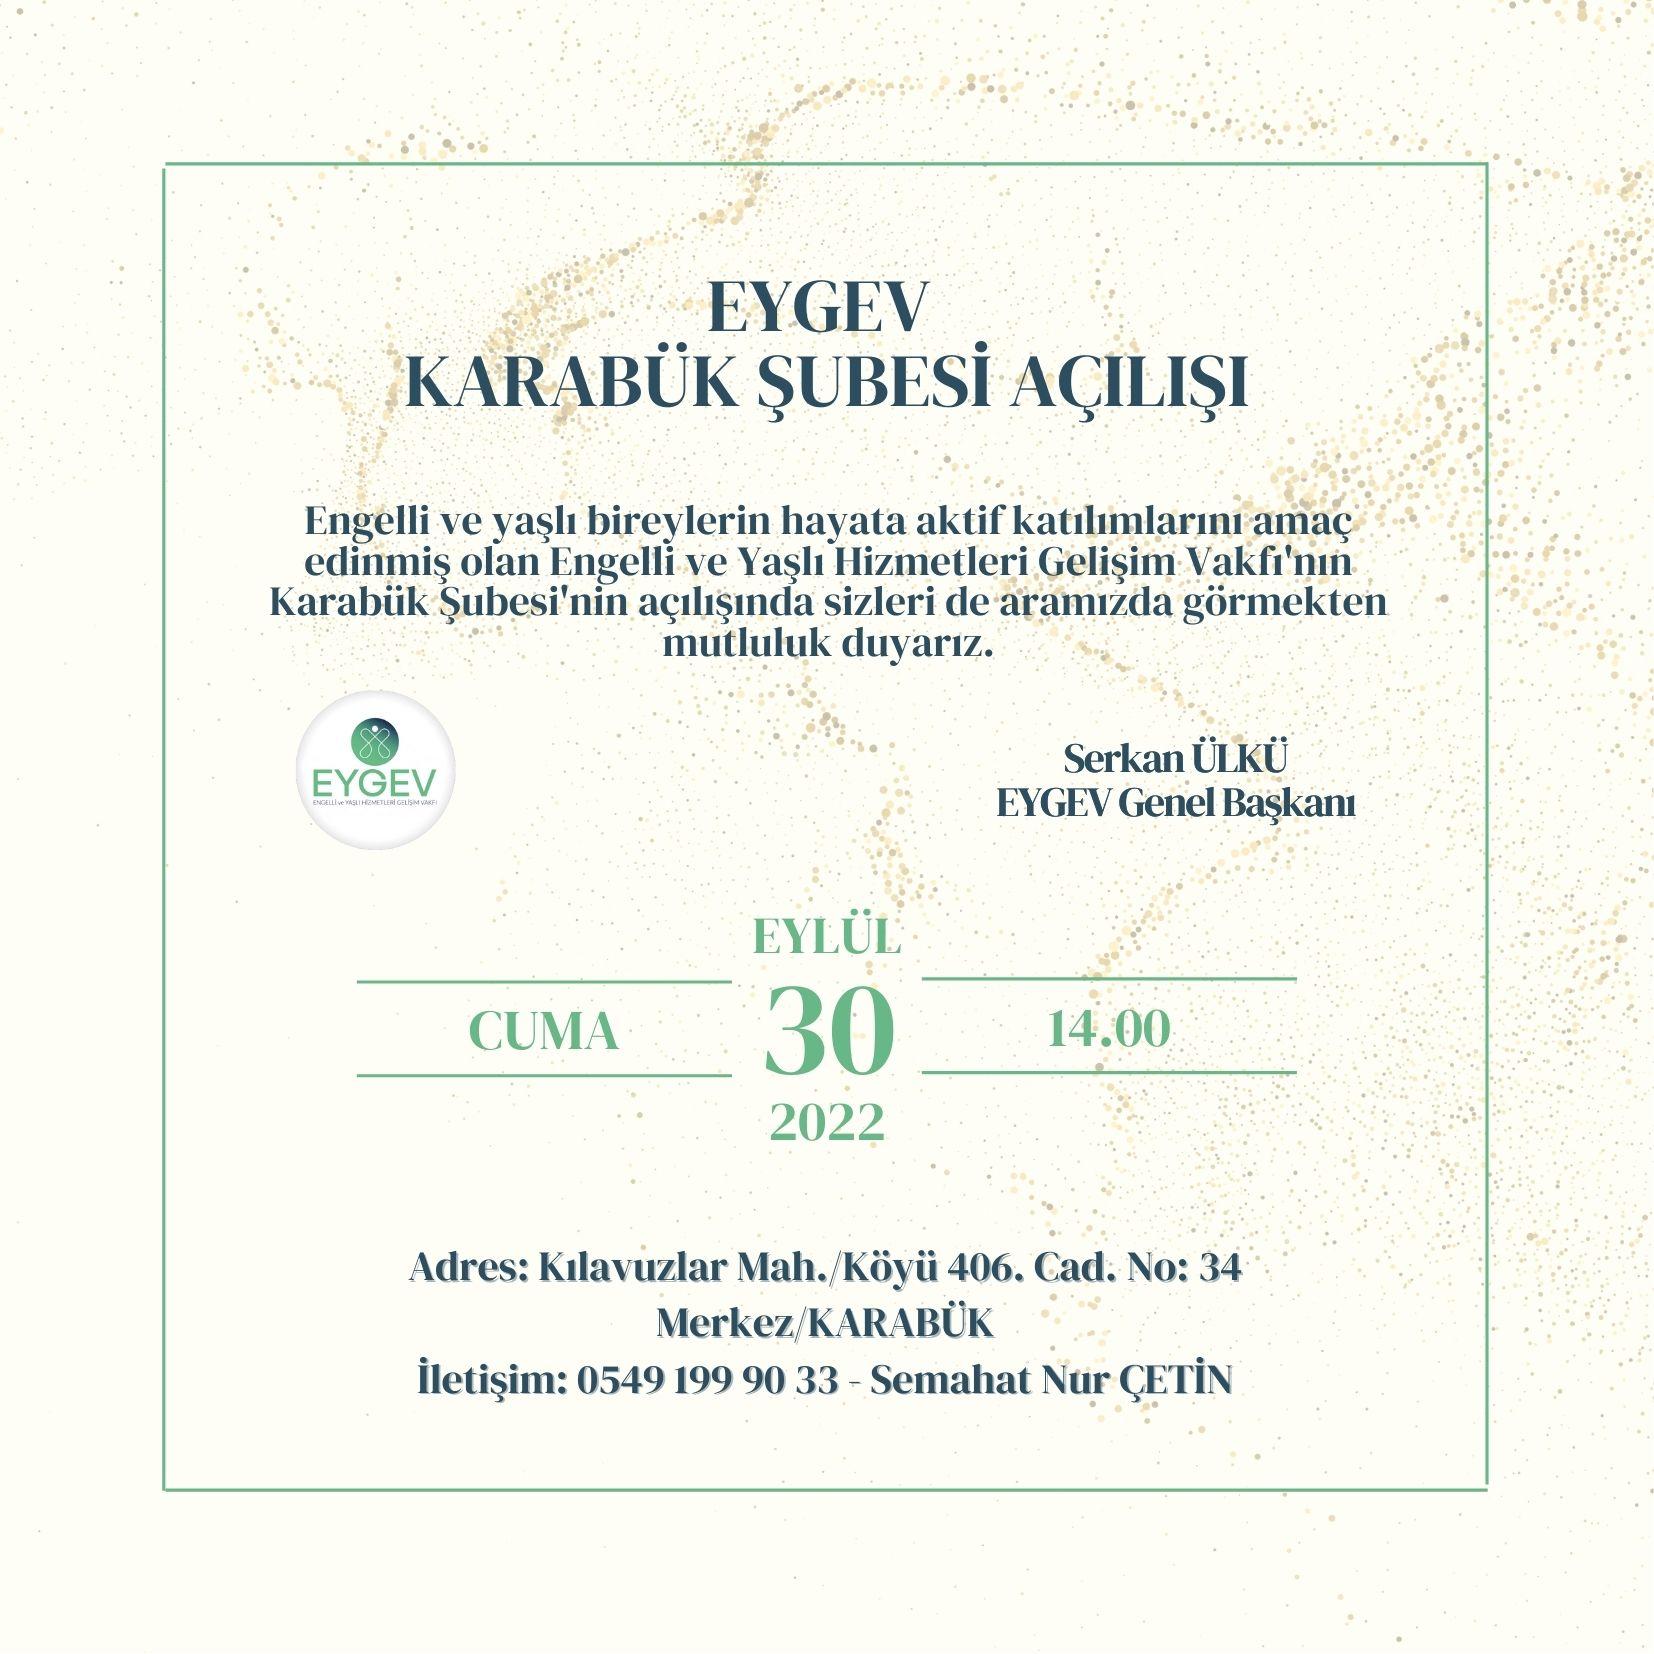 EYGEV Karabuk Branch Opening